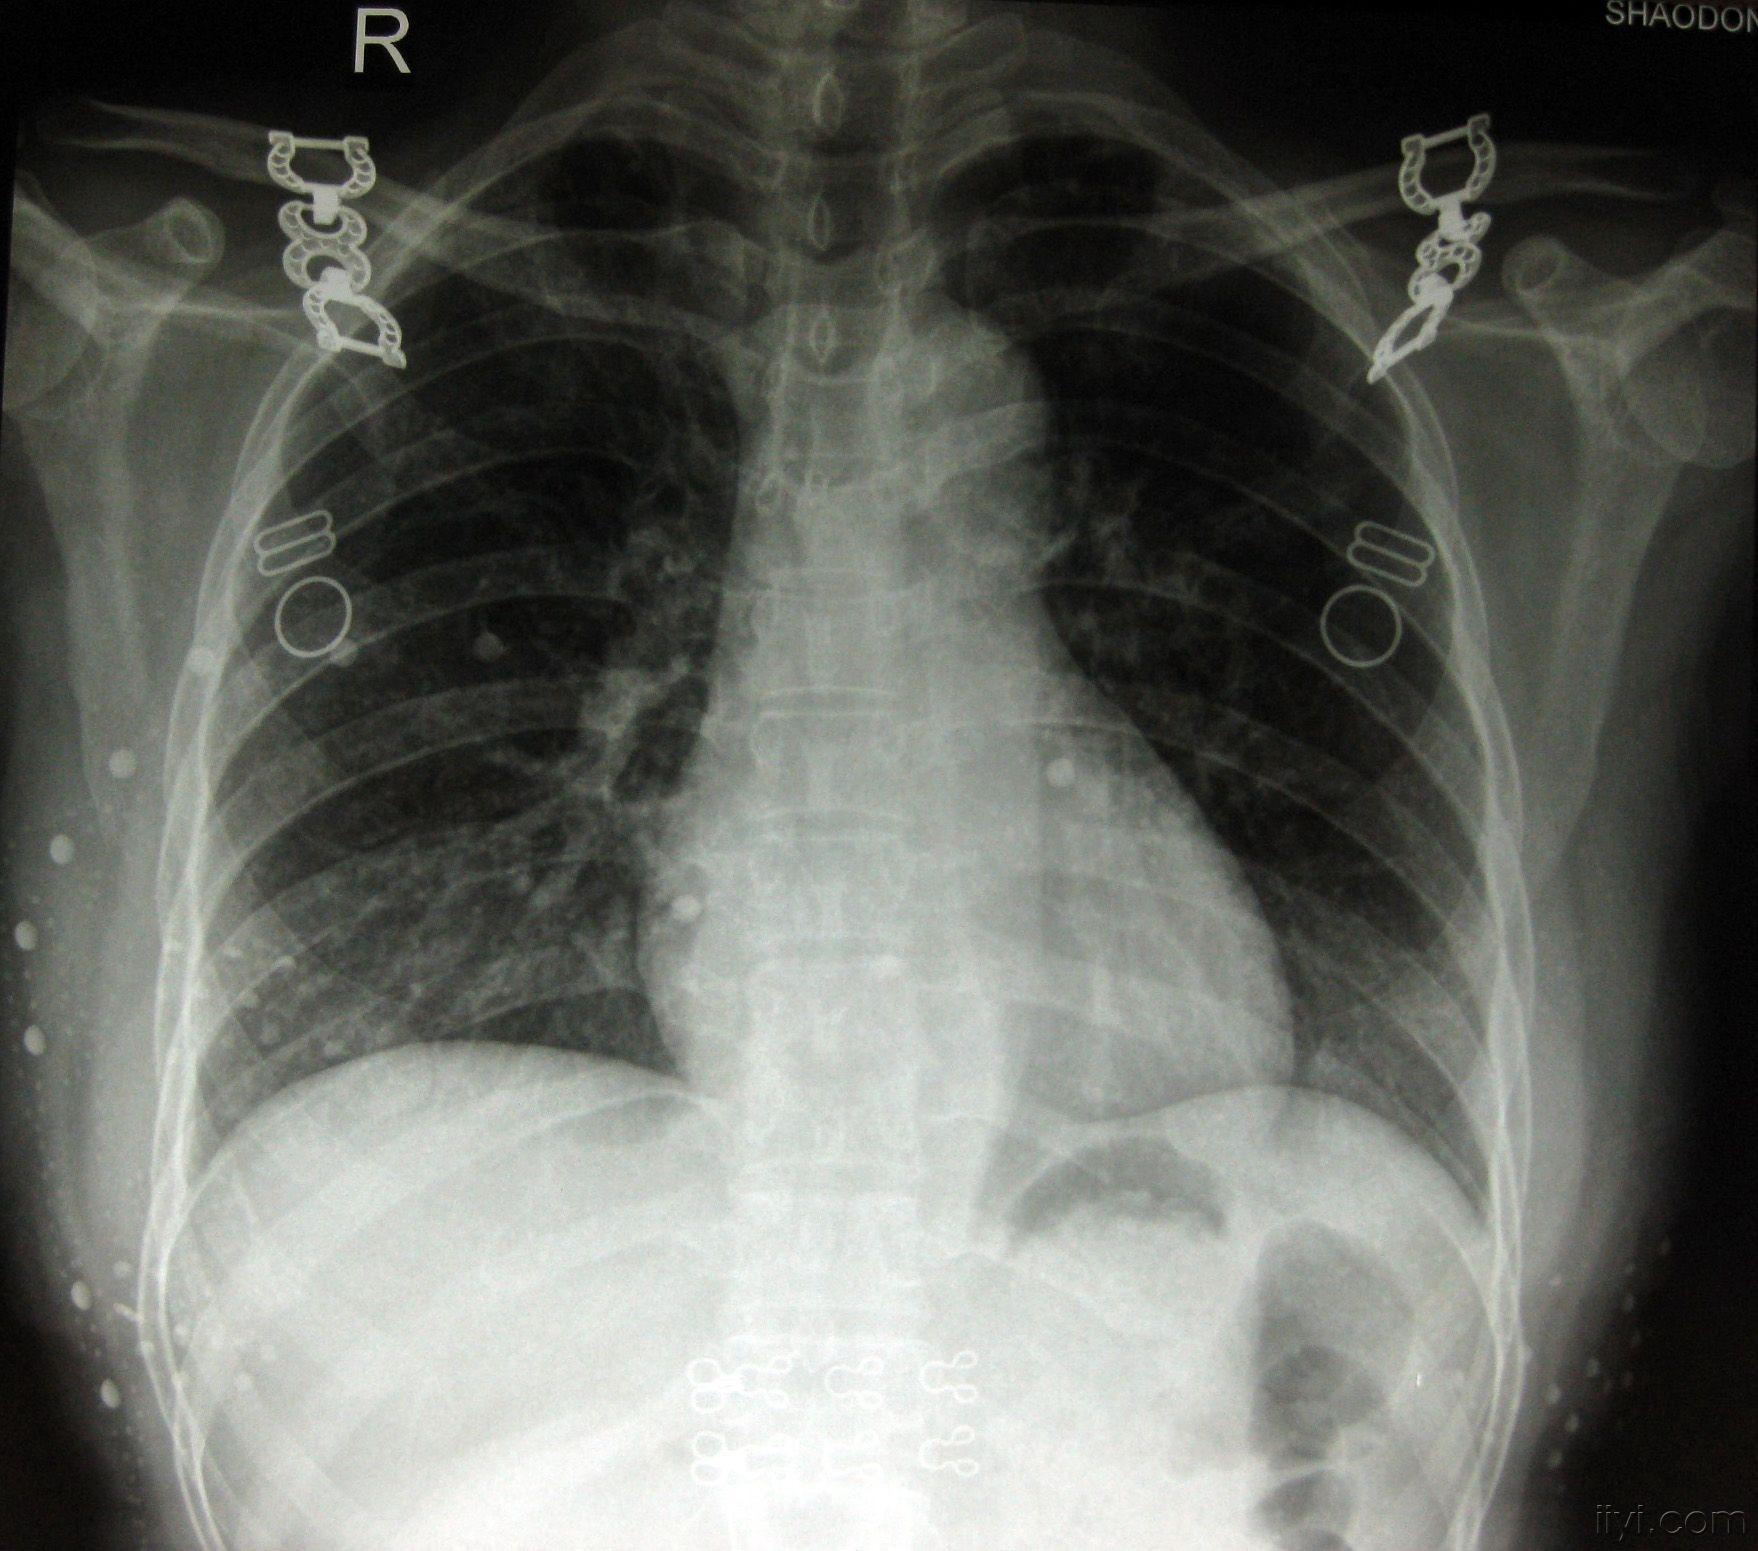 骨结核X光片图片